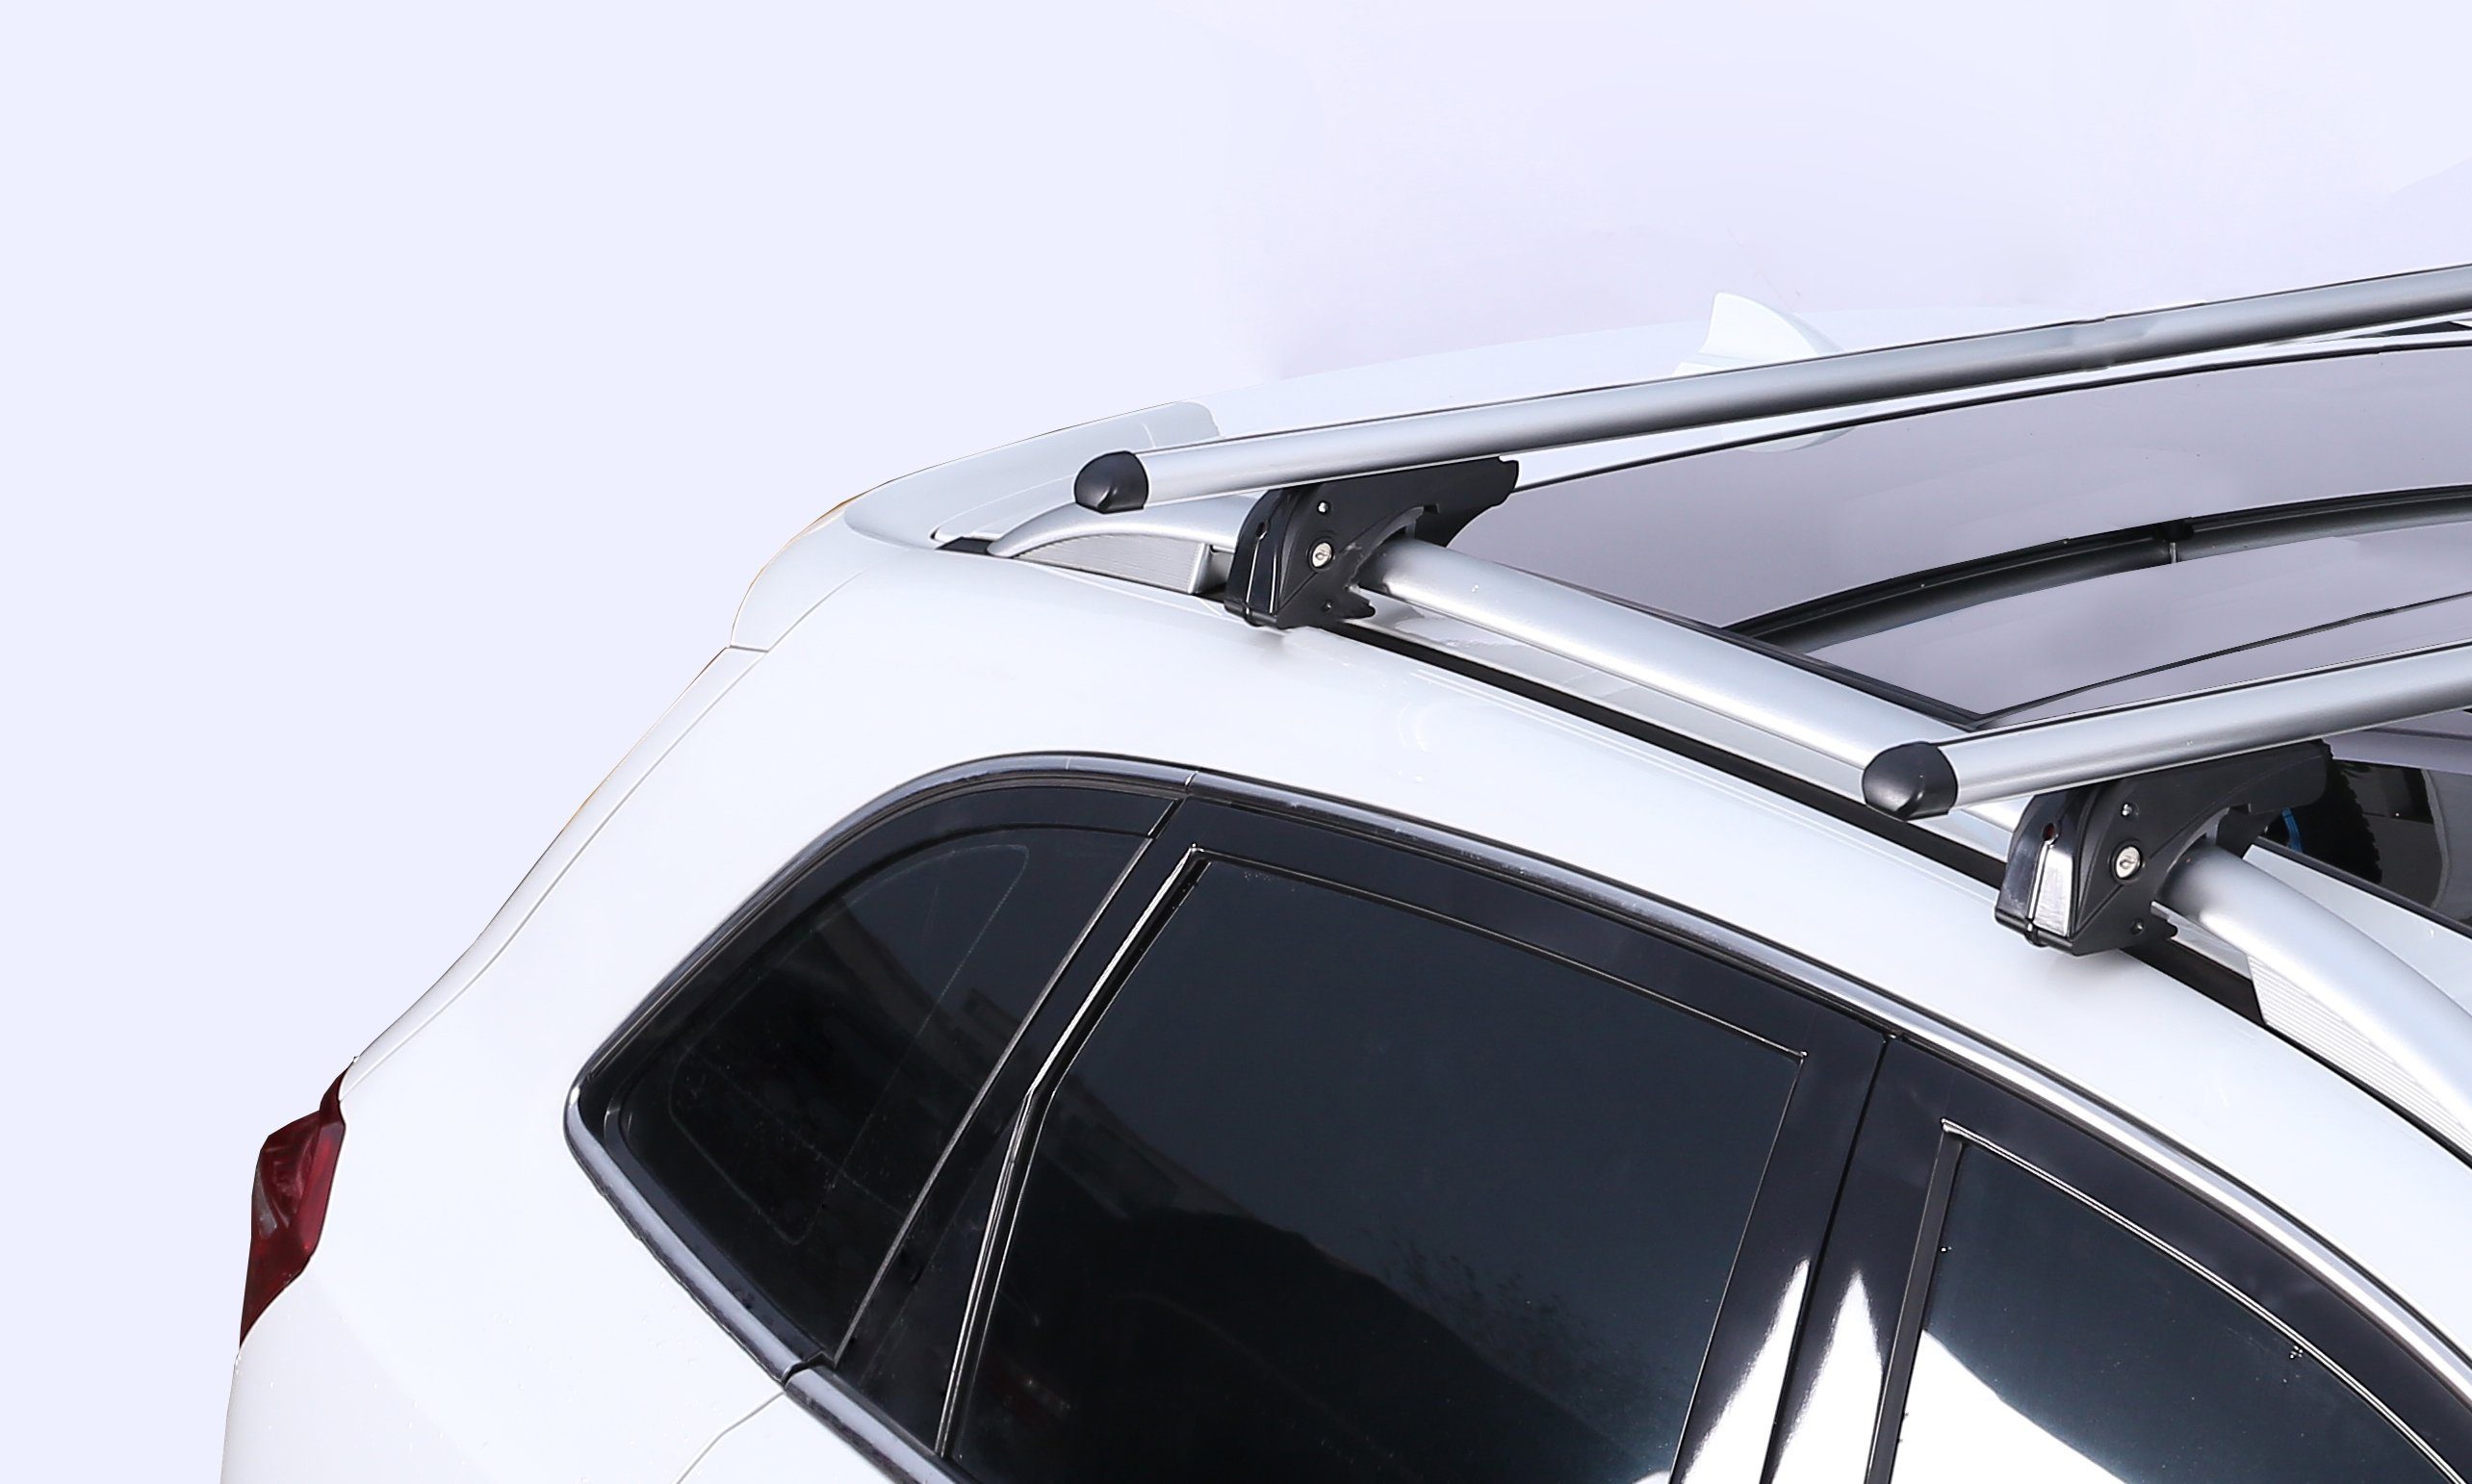 VDP Dachbox, (Für Ihren Dachträger/Relingträger 98-05, Station Focus Ford und im kompatibel mit Dachbox Focus Türer) + I I 98-05 Türer) VDPLION1 Set), Dachbox/Gepäckbox Dachträger Kombi CUBE470 (5 Ford (5 Wagon